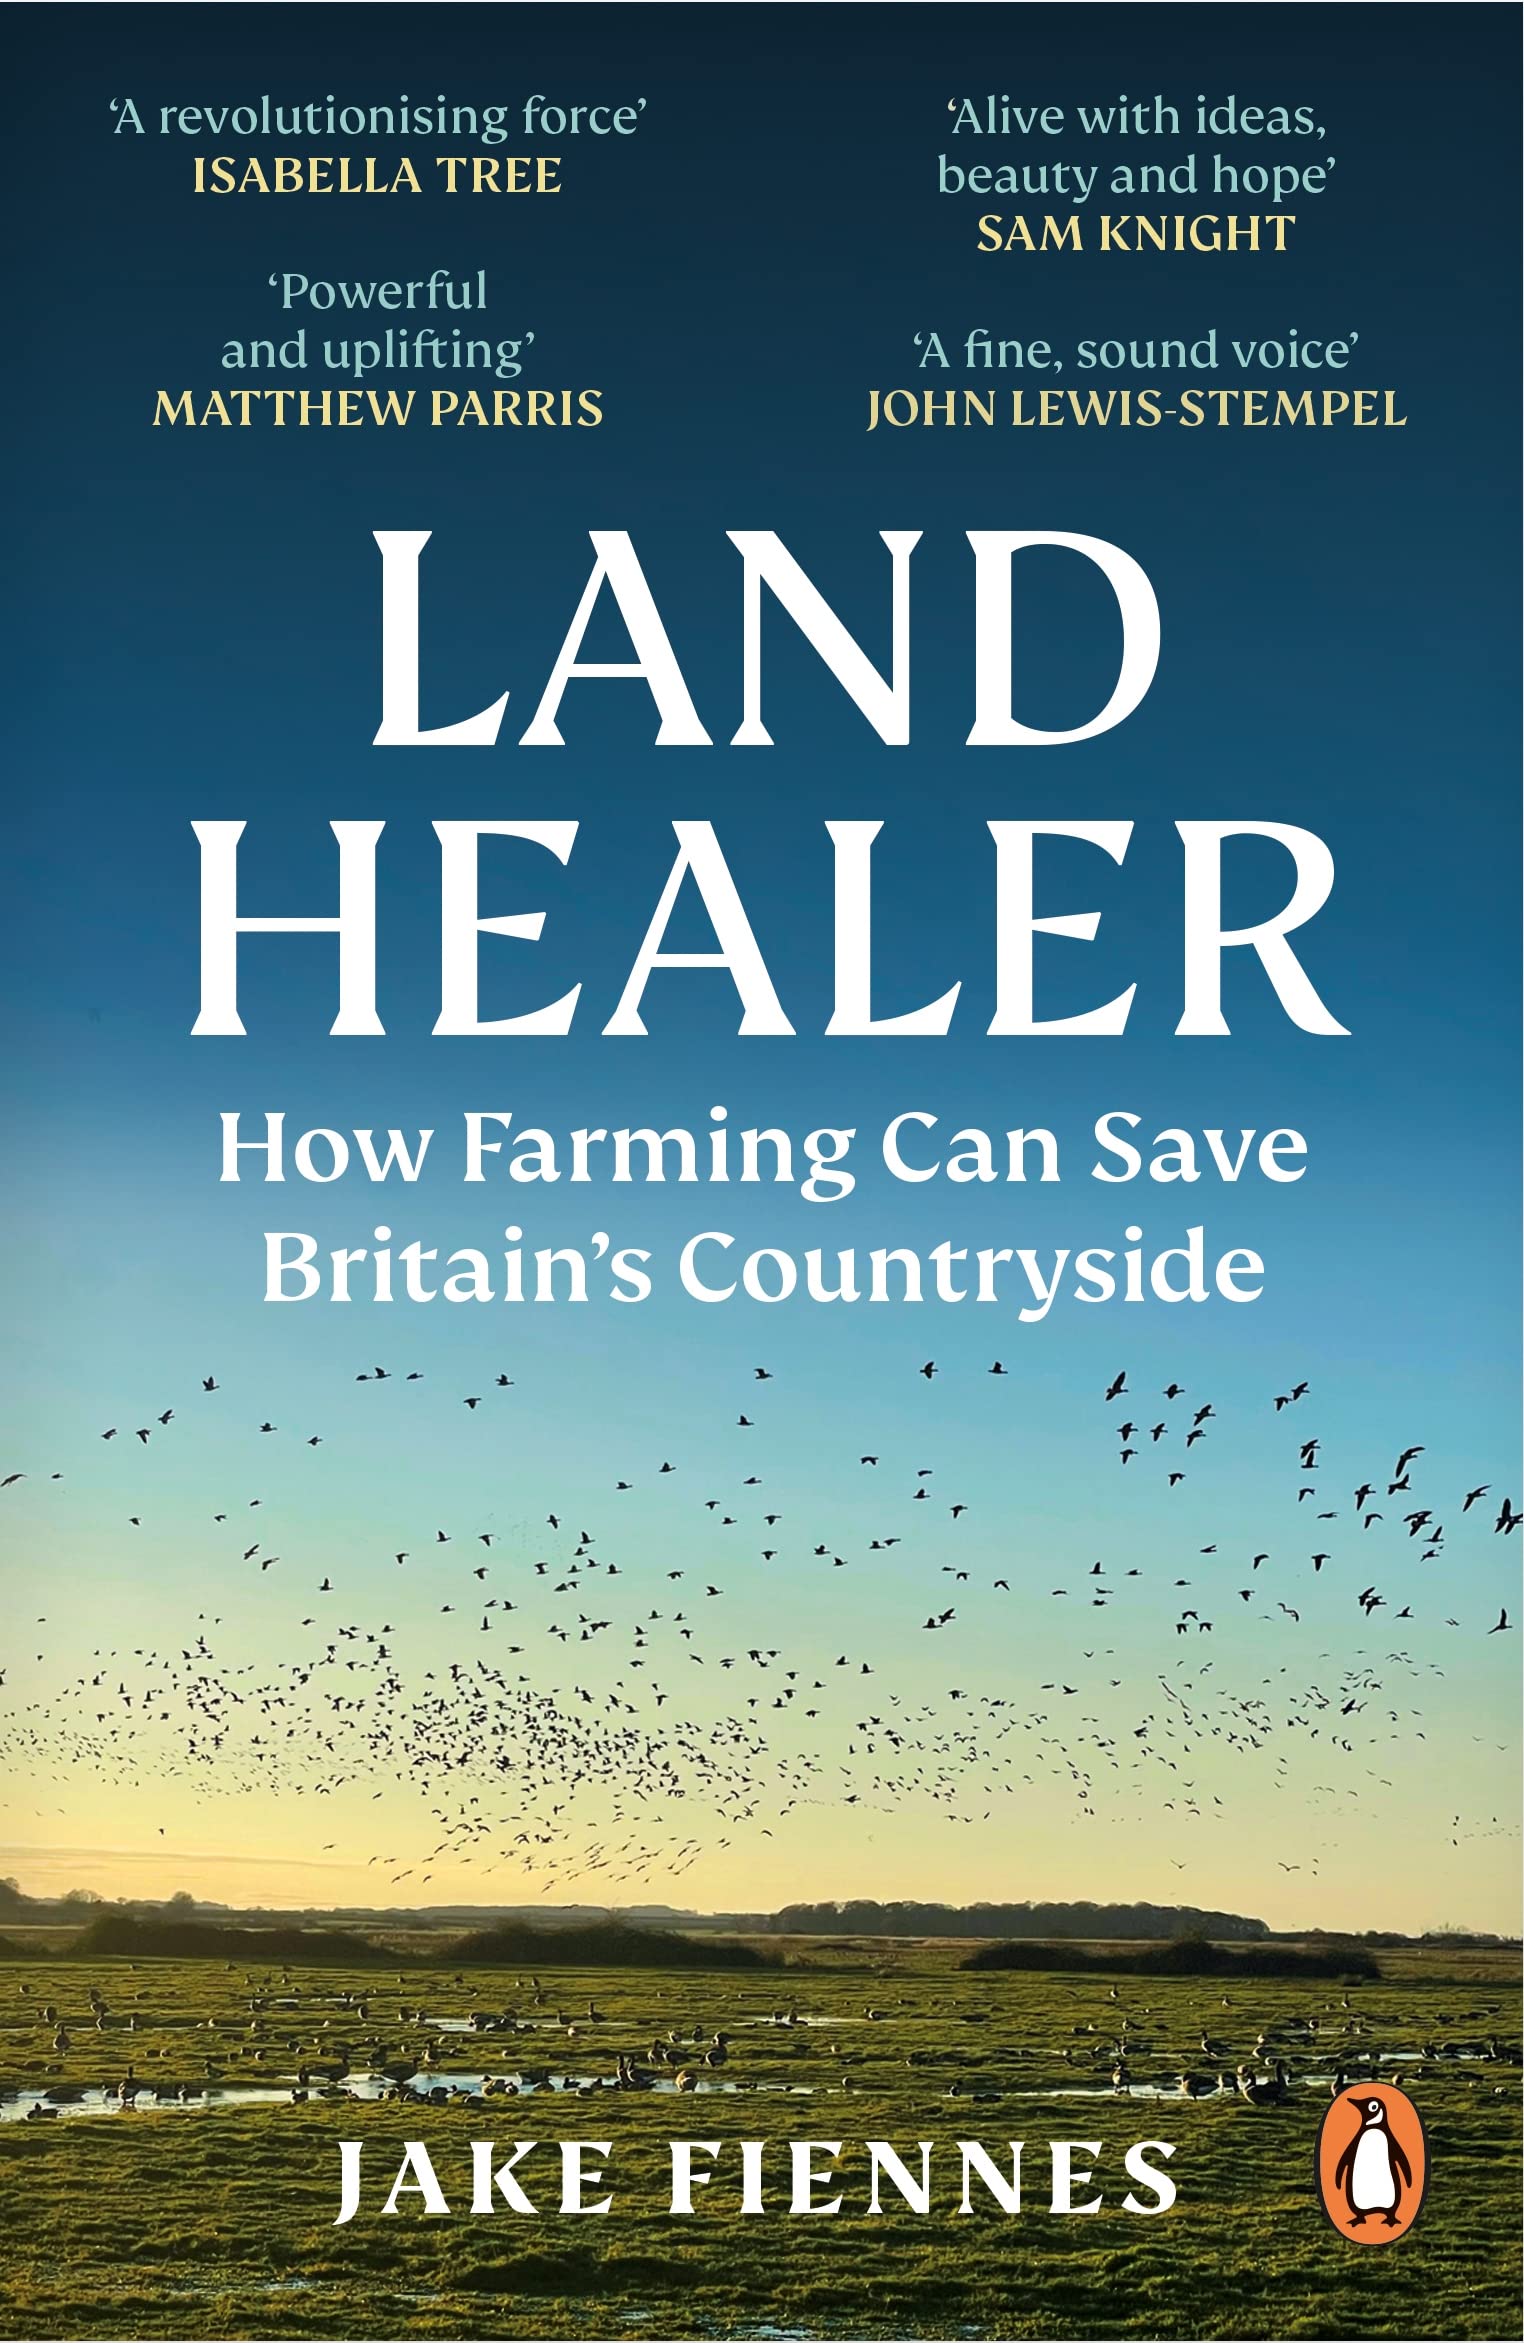 Land healer paperback book cover